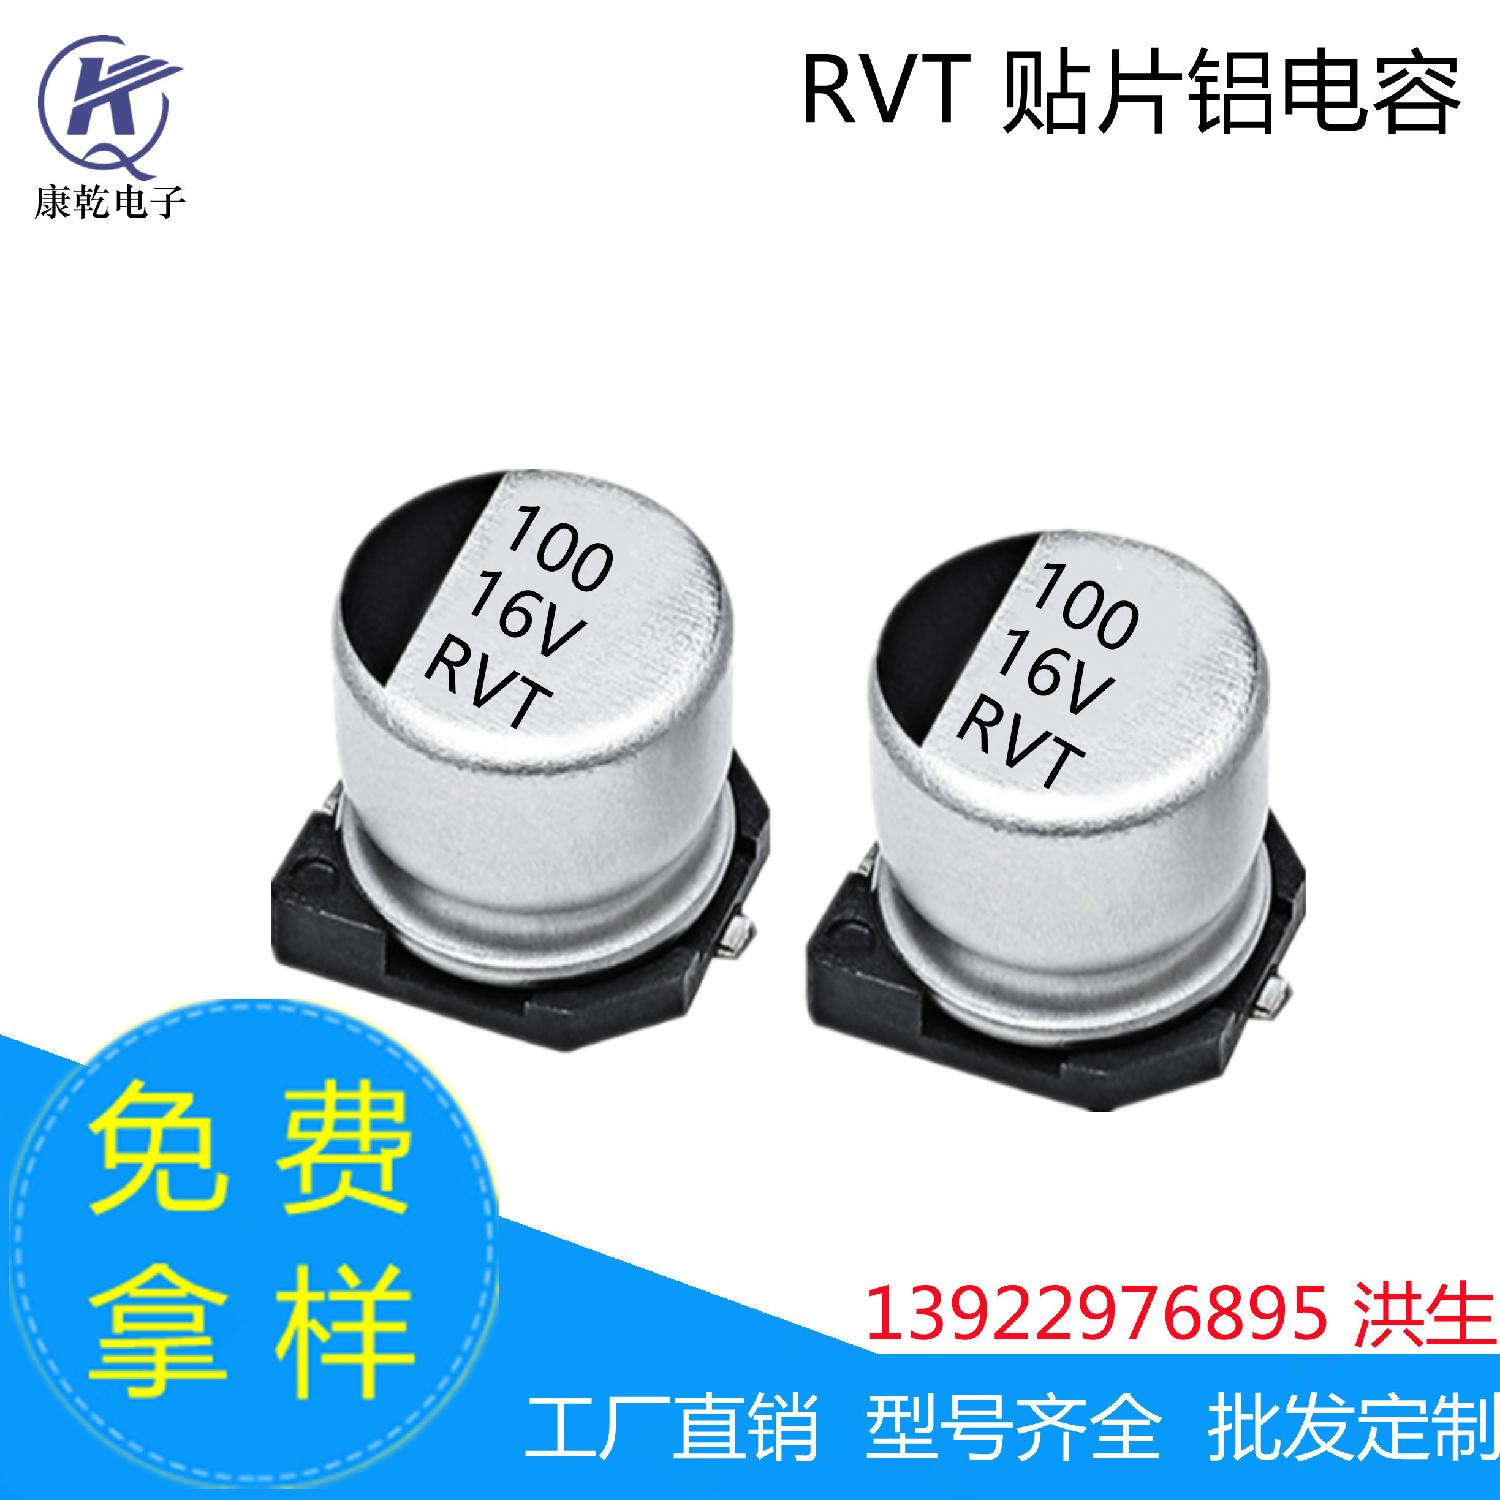 厂家现货 RVT贴片铝电解电容器 100uF 16V  6.3*5.4mm  6.3*7.7mm 100uF 16V